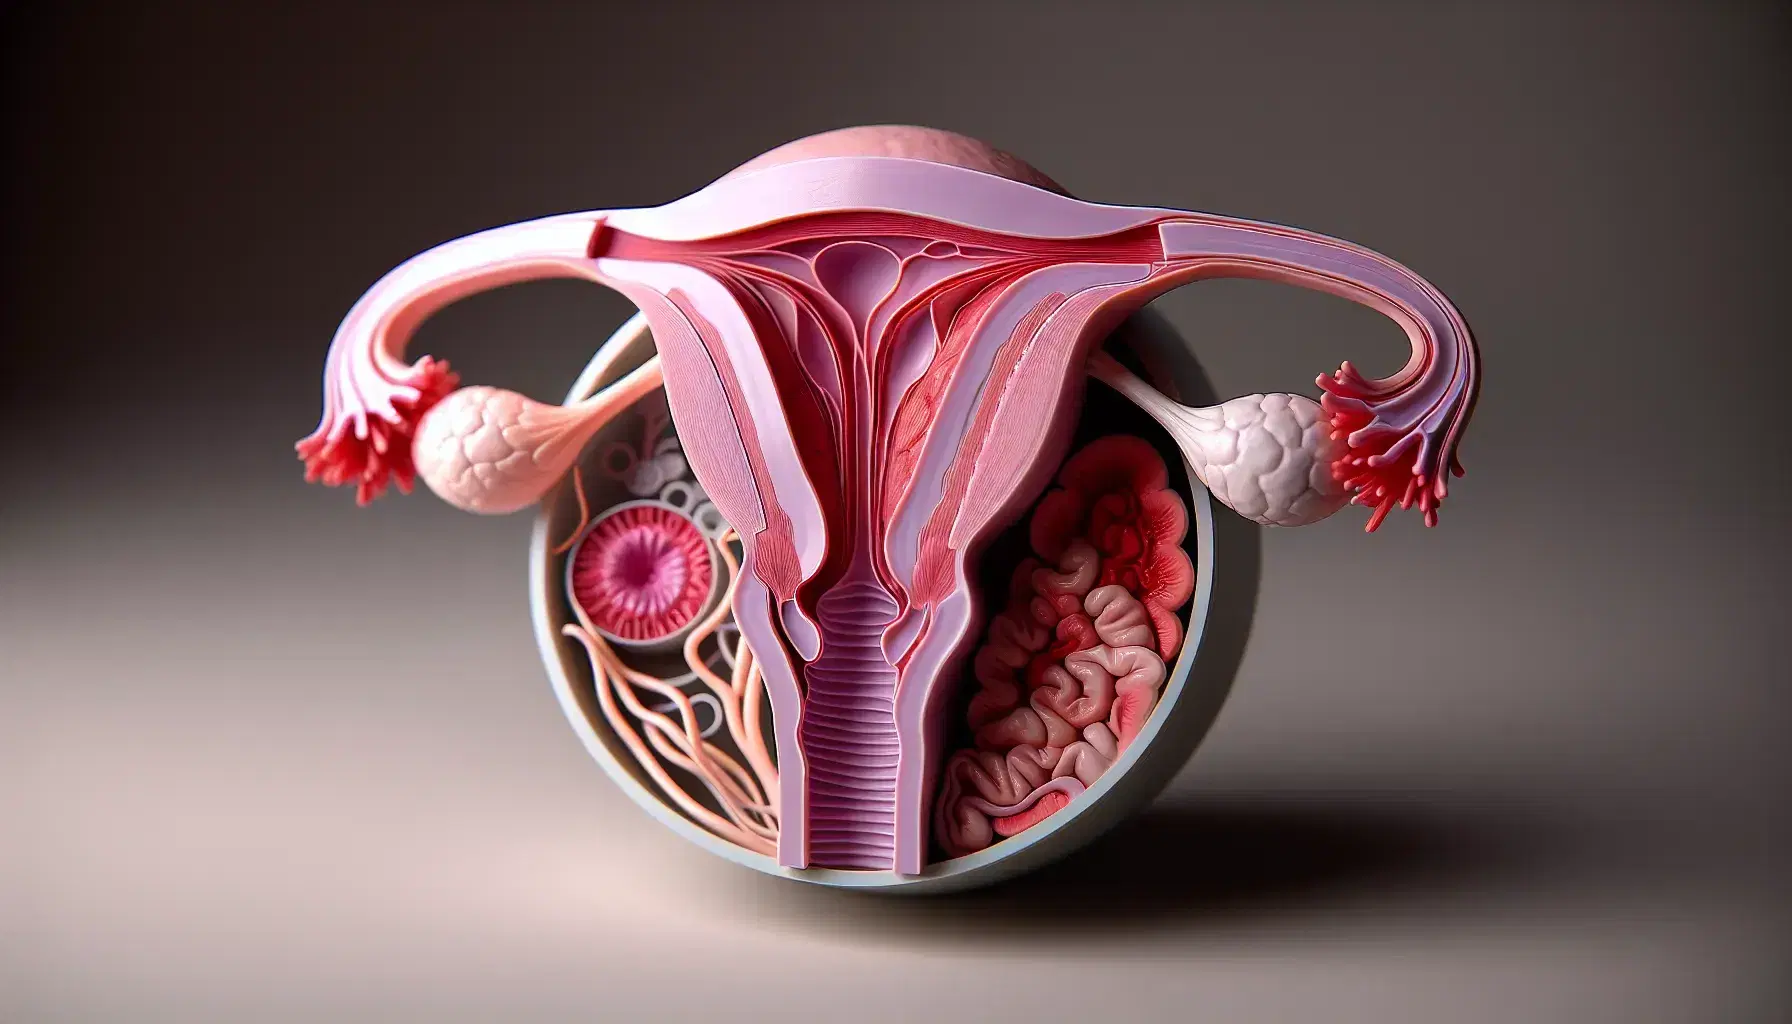 Modello anatomico 3D del sistema riproduttivo femminile con utero, tube di Falloppio, ovaie e vagina su superficie neutra.